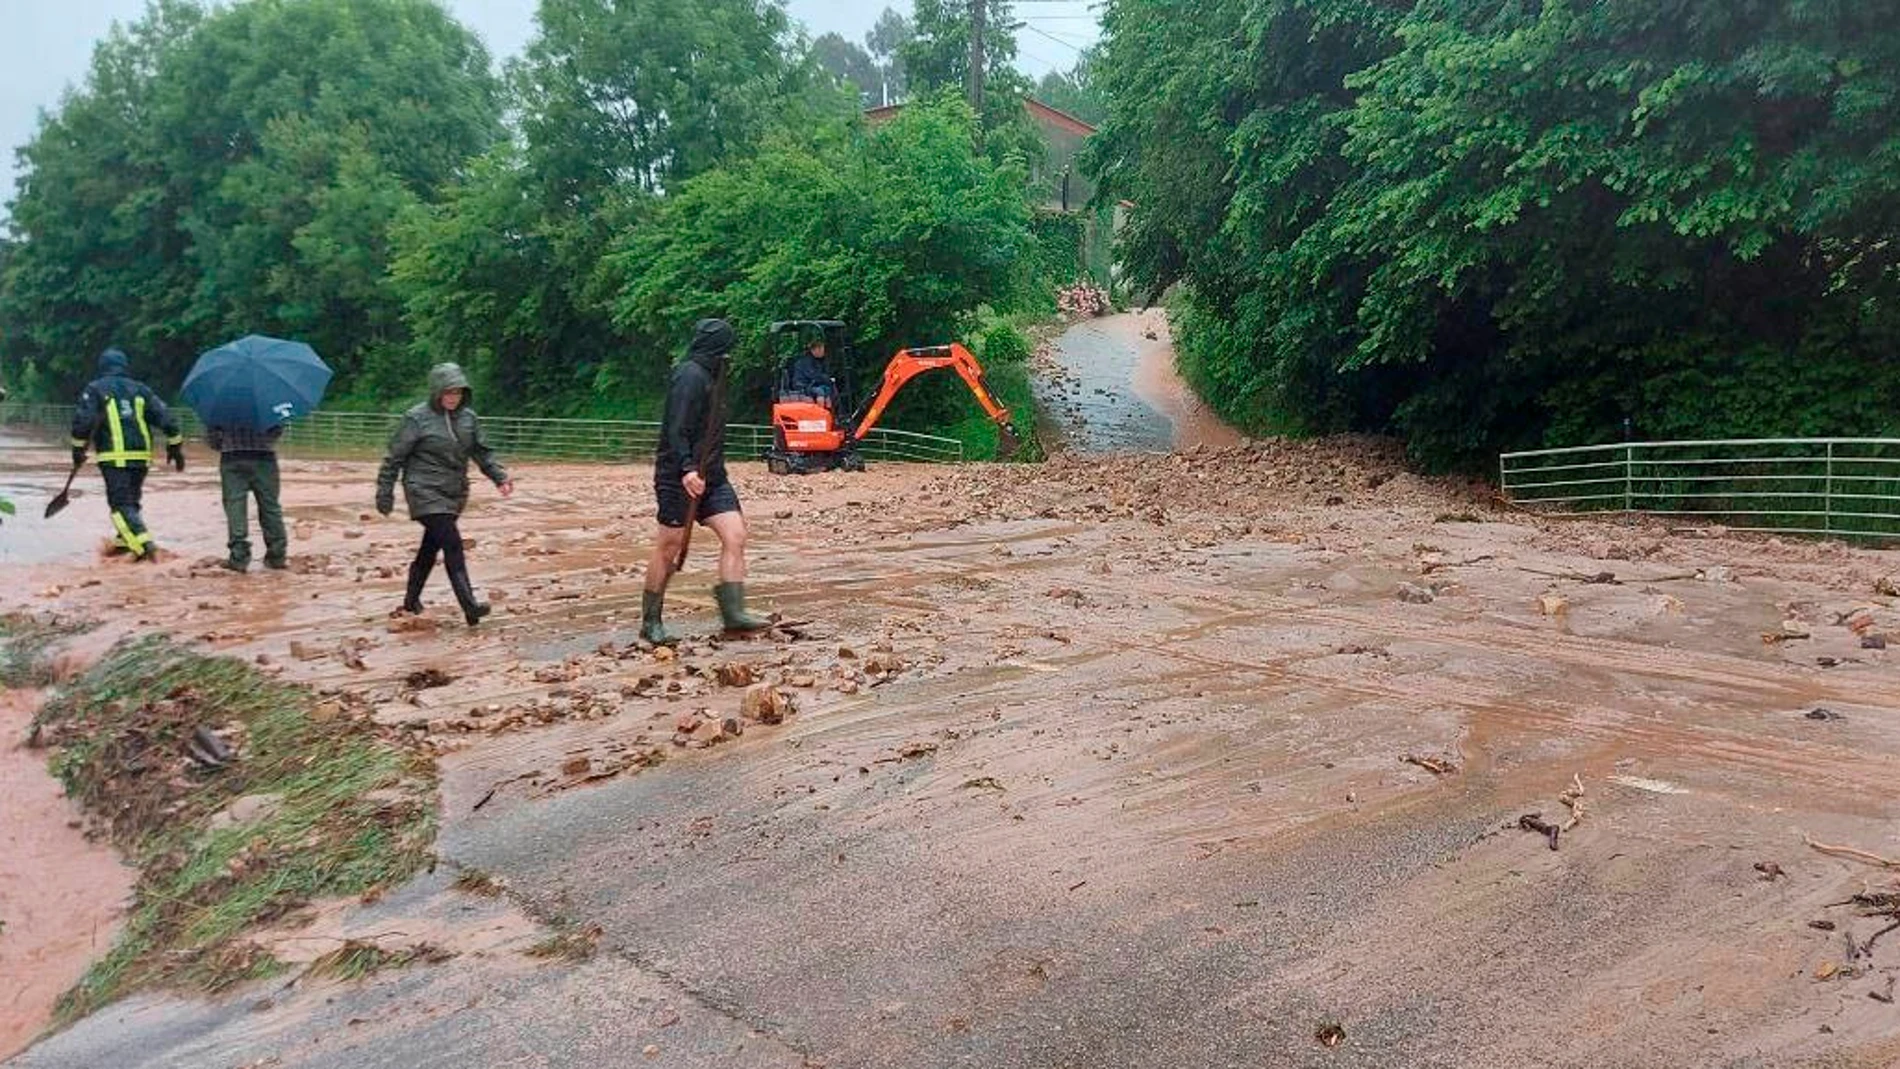 Llanes, tras sufrir unas históricas inundaciones